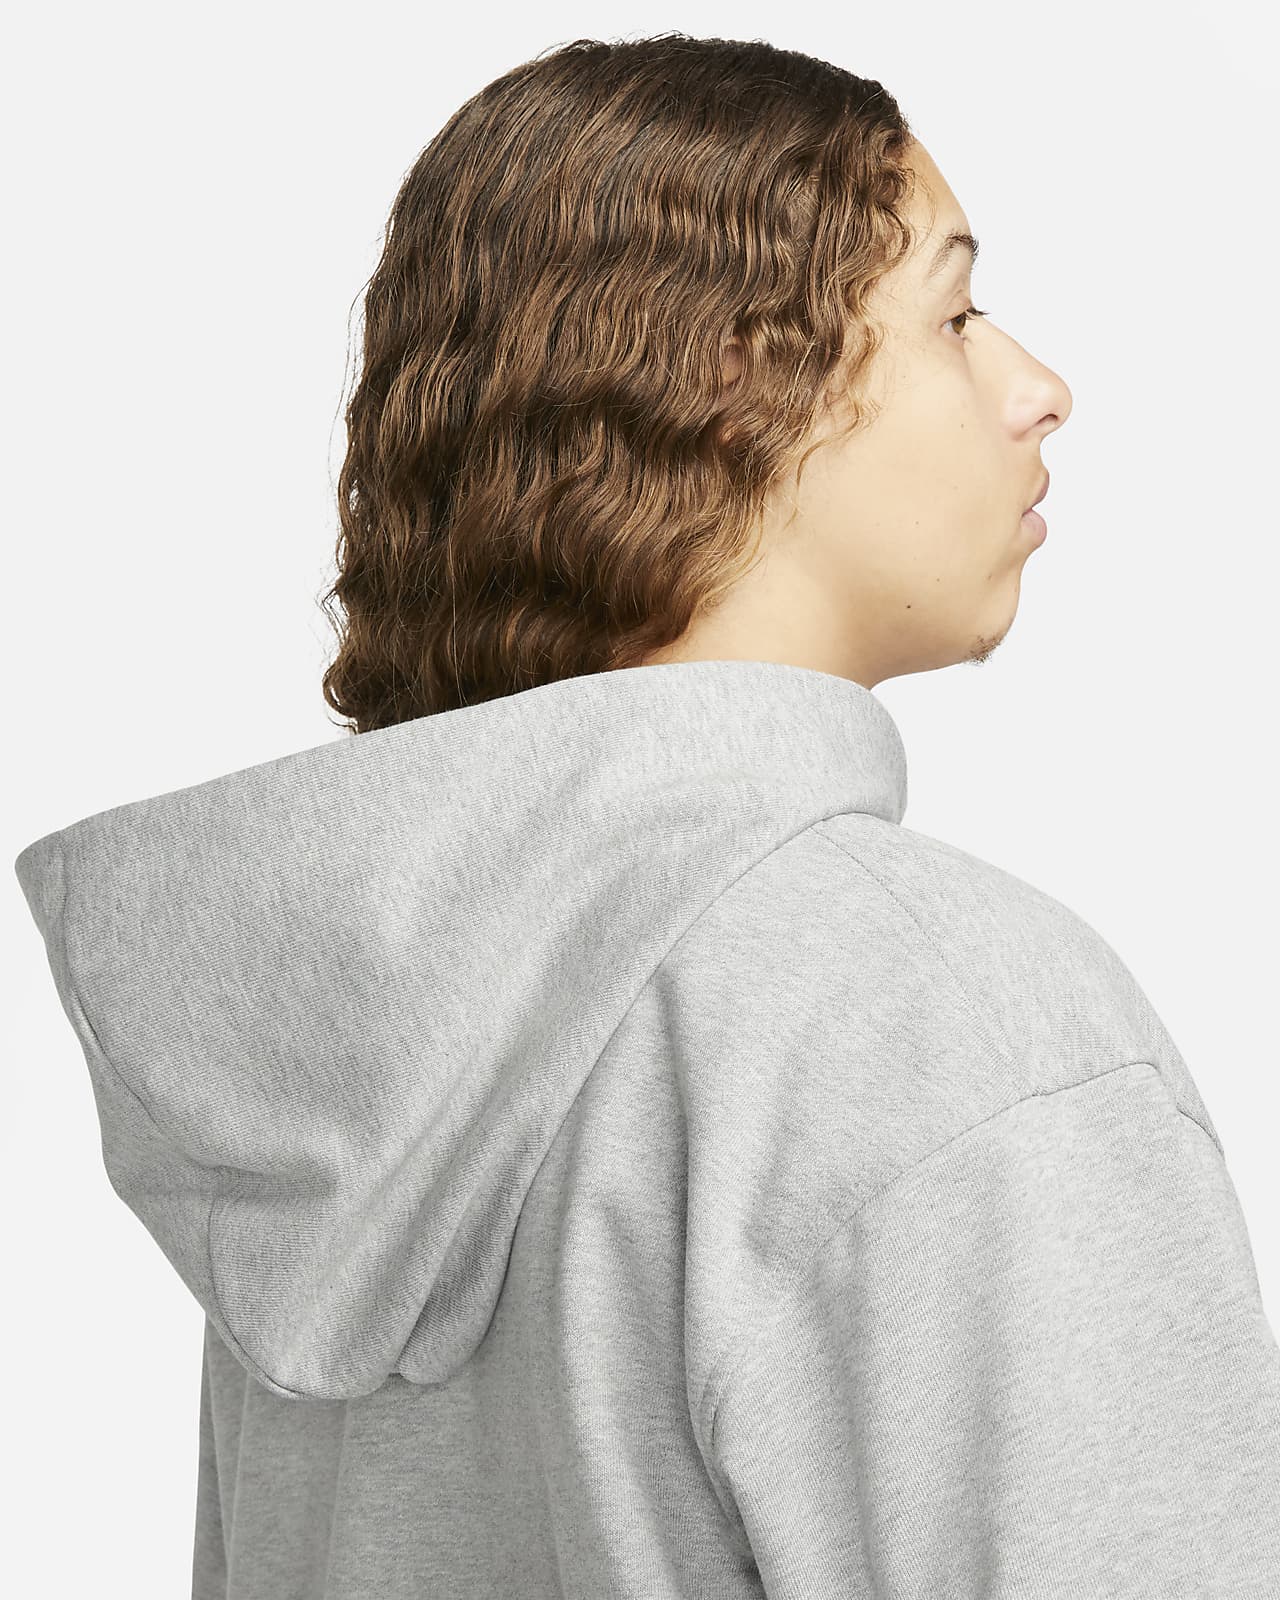 Men's Dri-FIT Hoodies & Sweatshirts. Nike CA